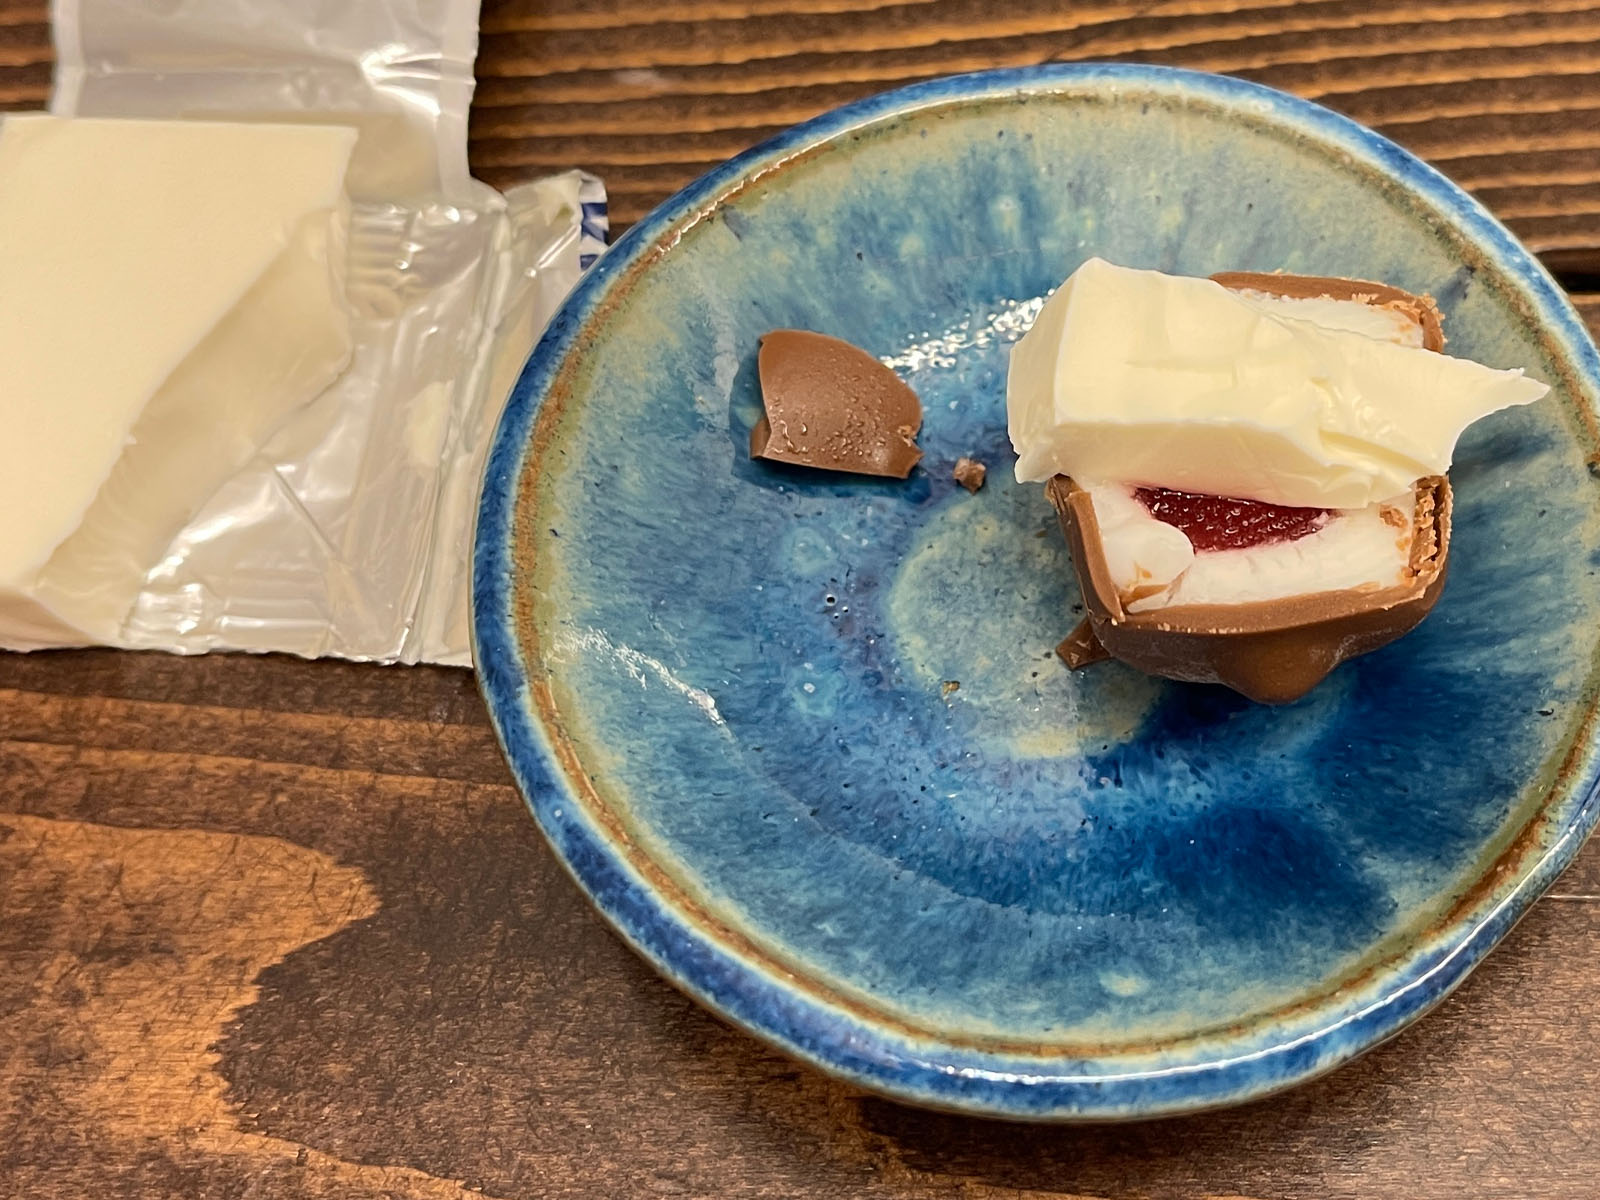 Kiriのクリームチーズを使用したGODIVAのショコラフォンデュアイスを買ってみた！